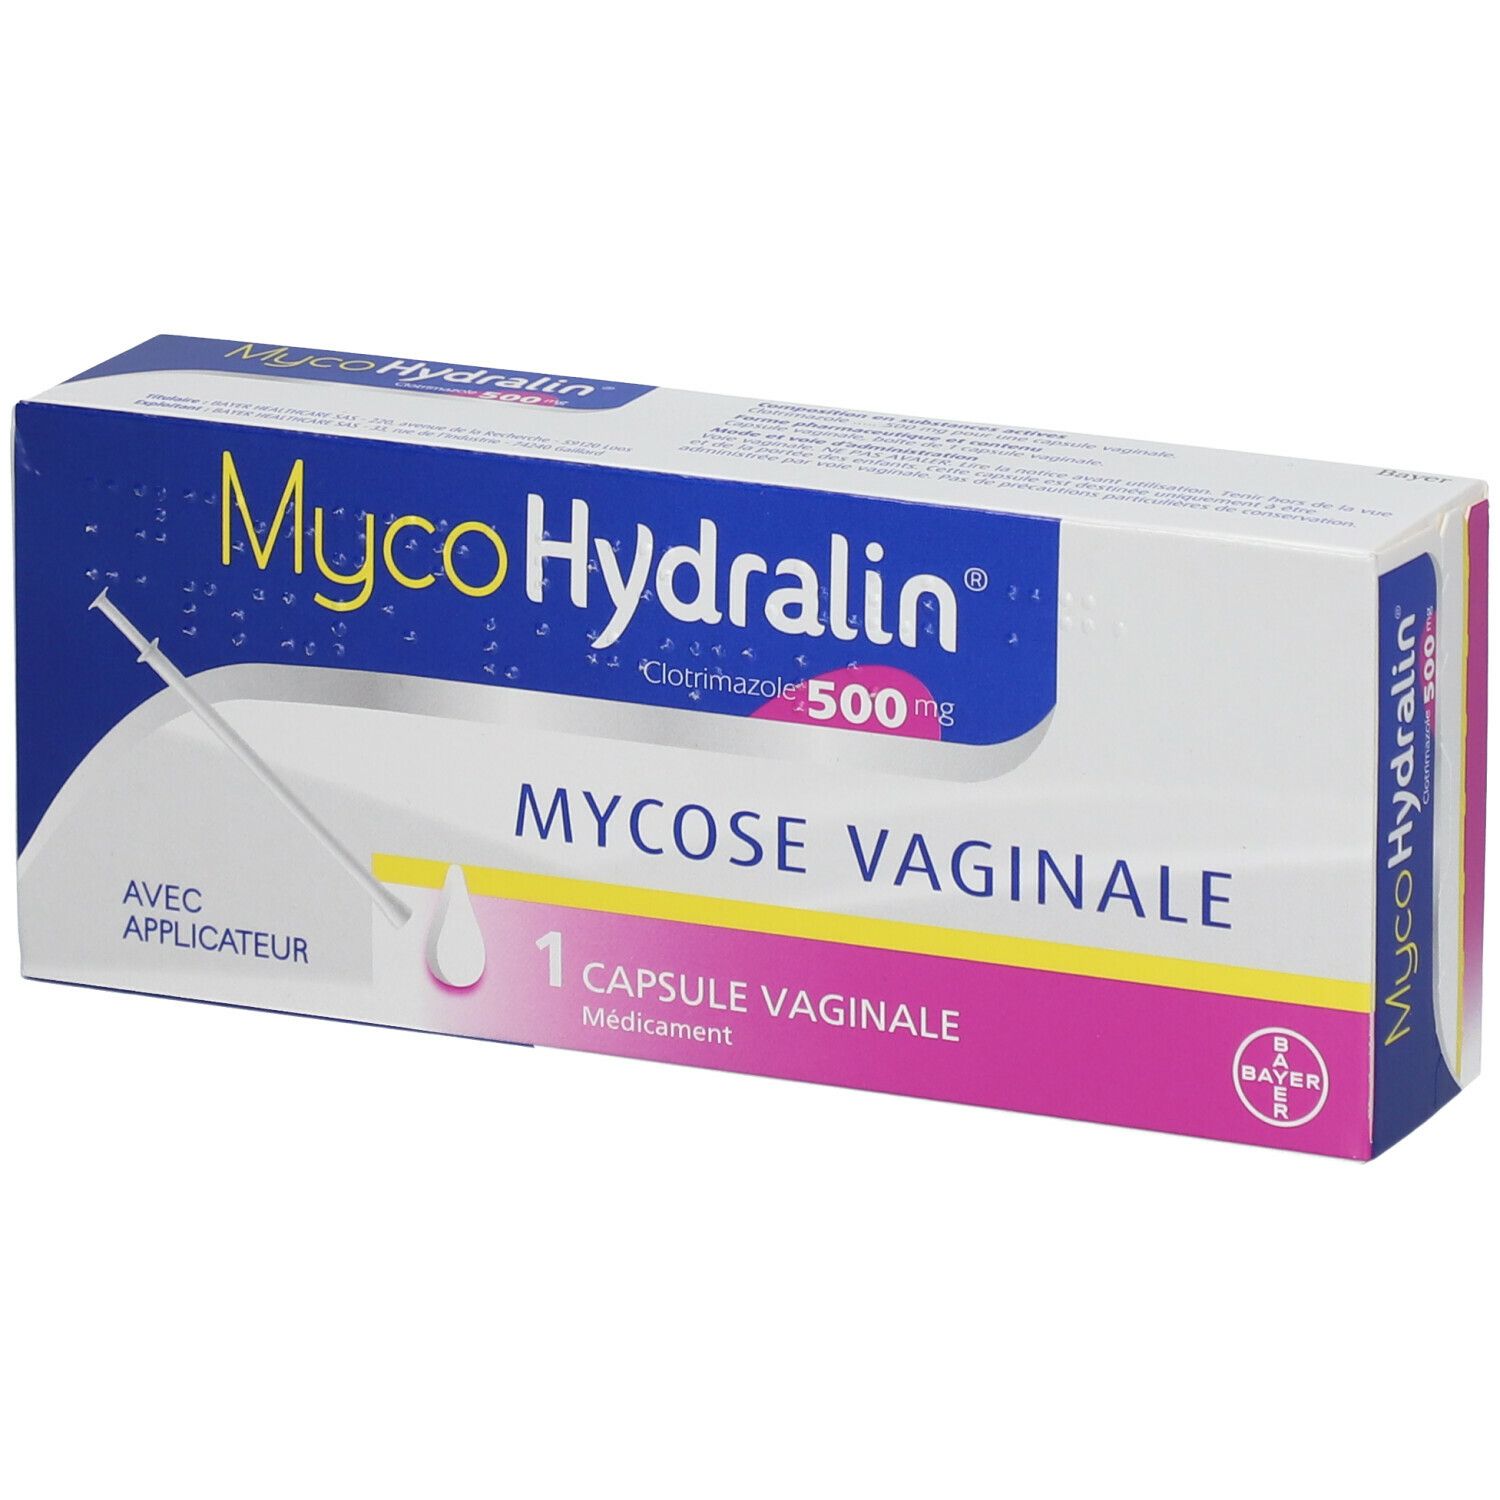 MycoHydralin 1 capsule vaginale avec applicateur